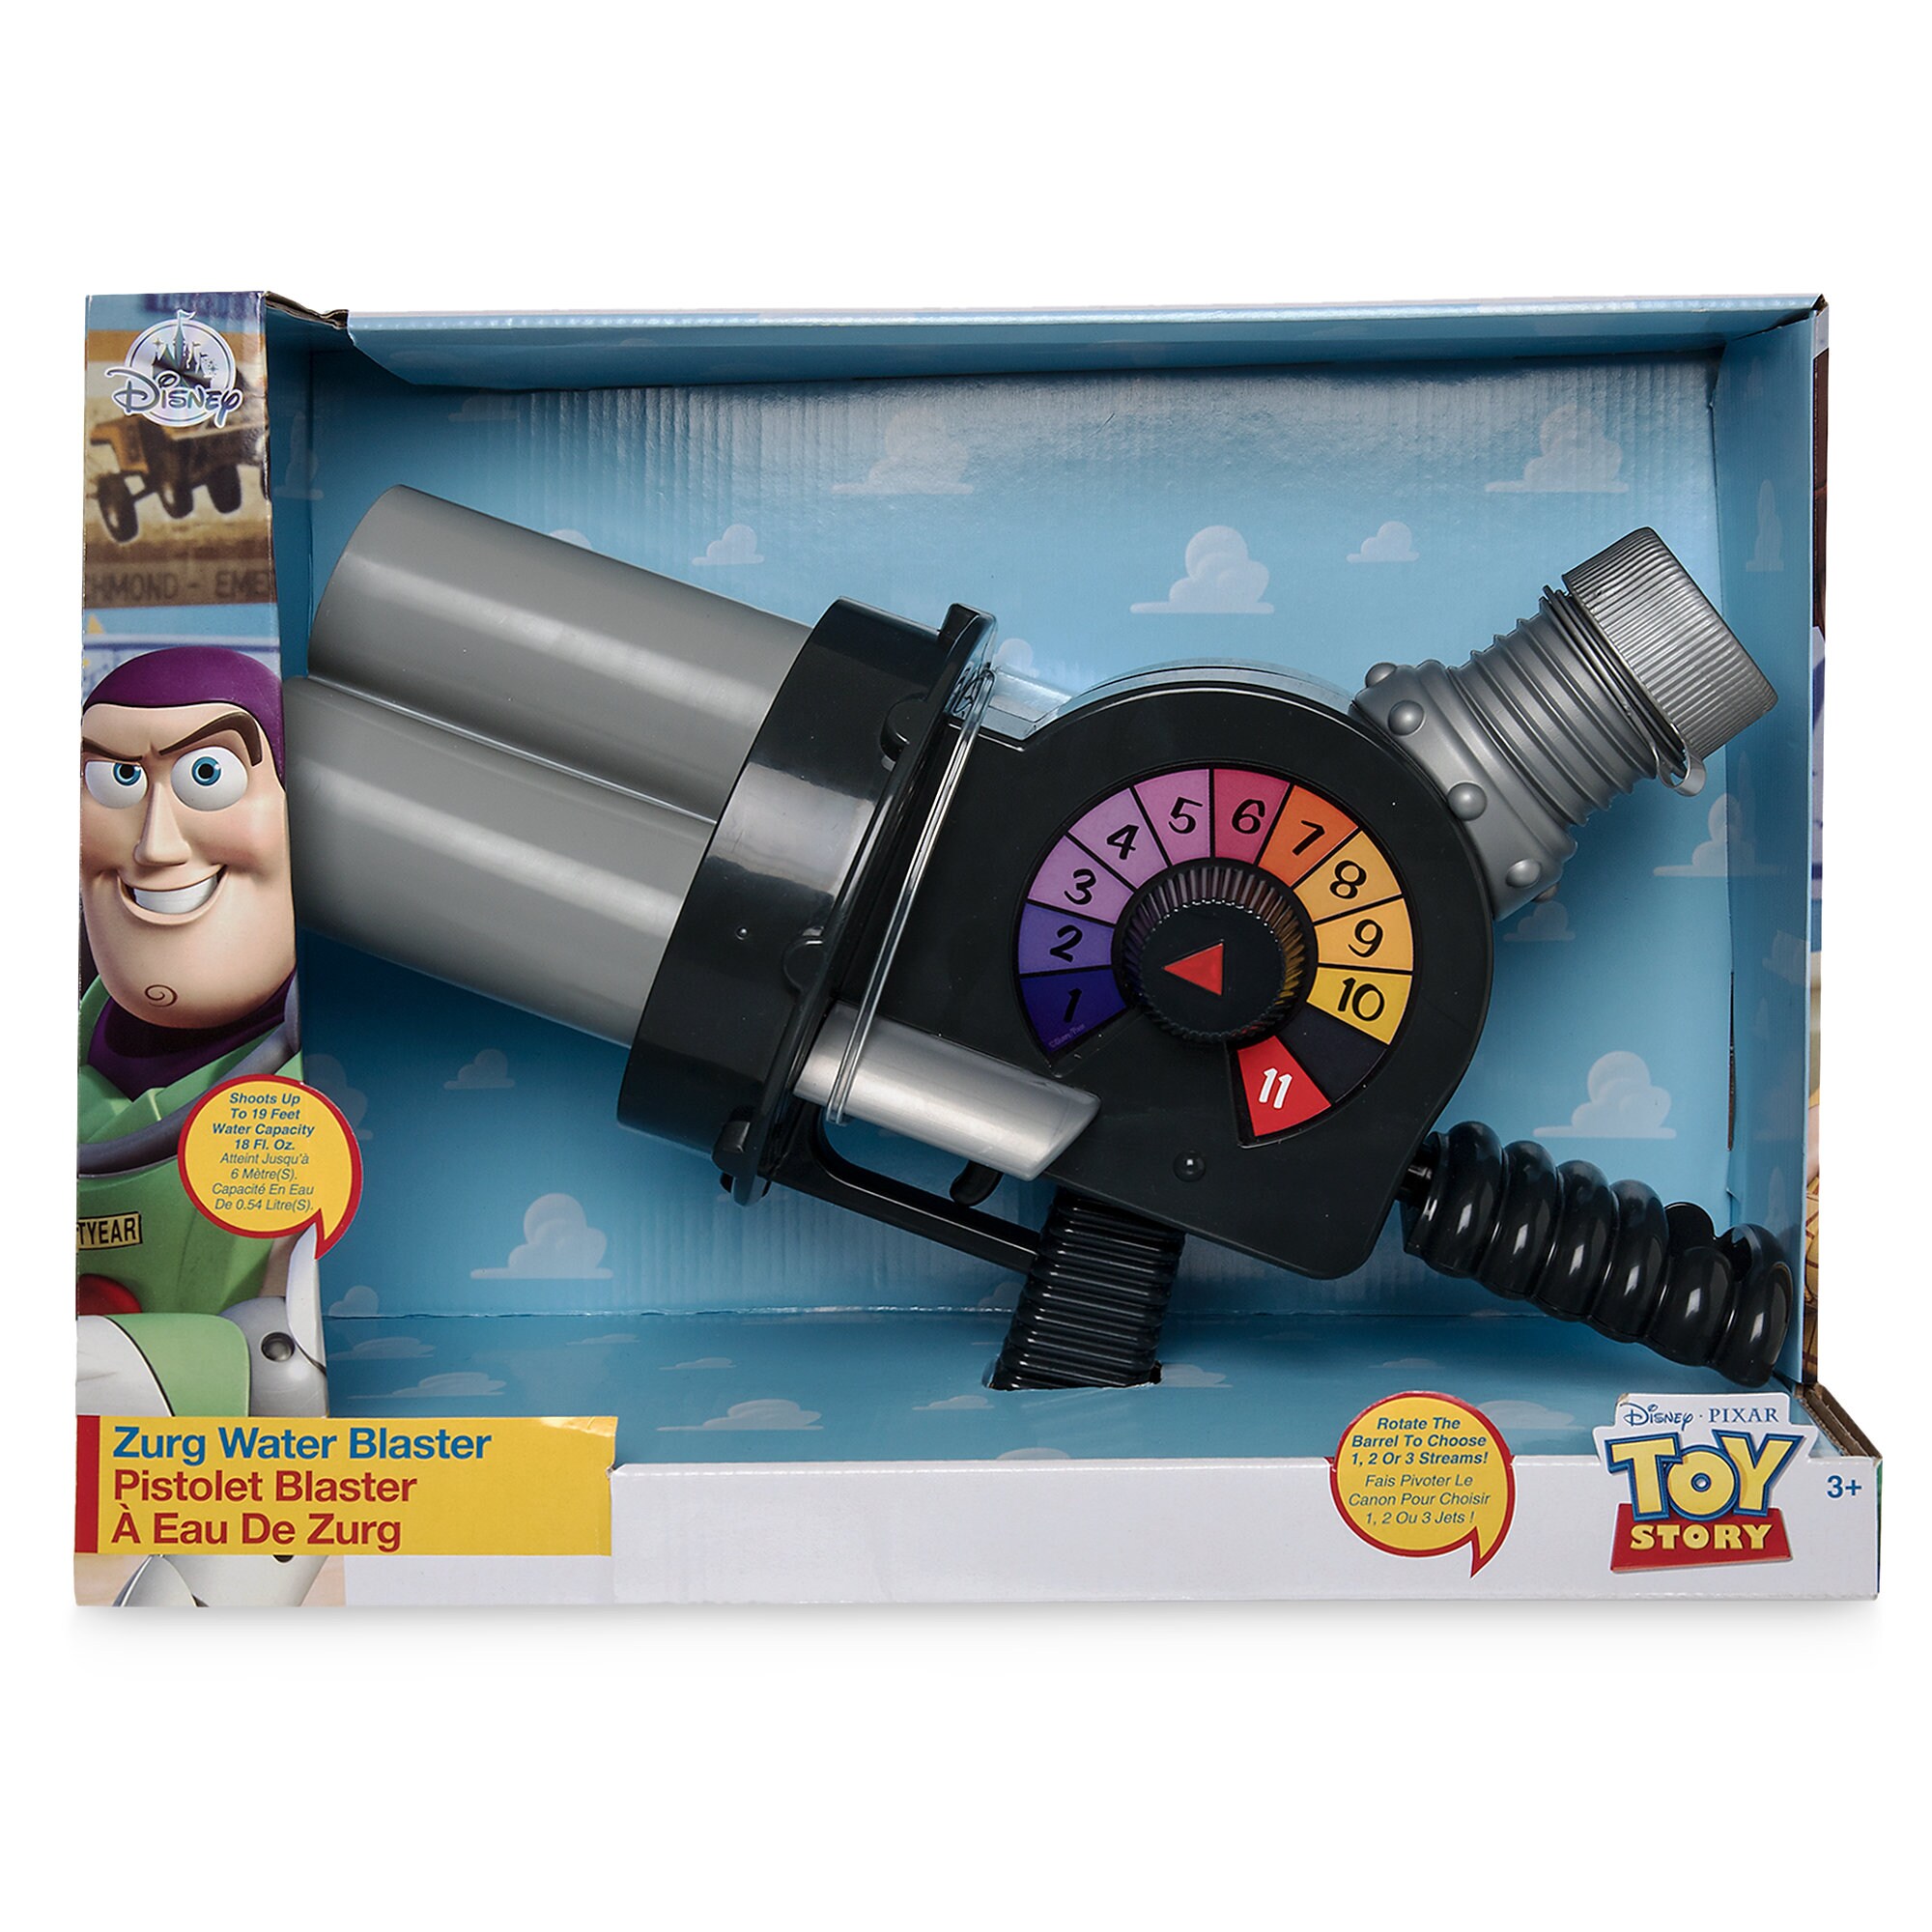 Zurg Water Blaster - Toy Story